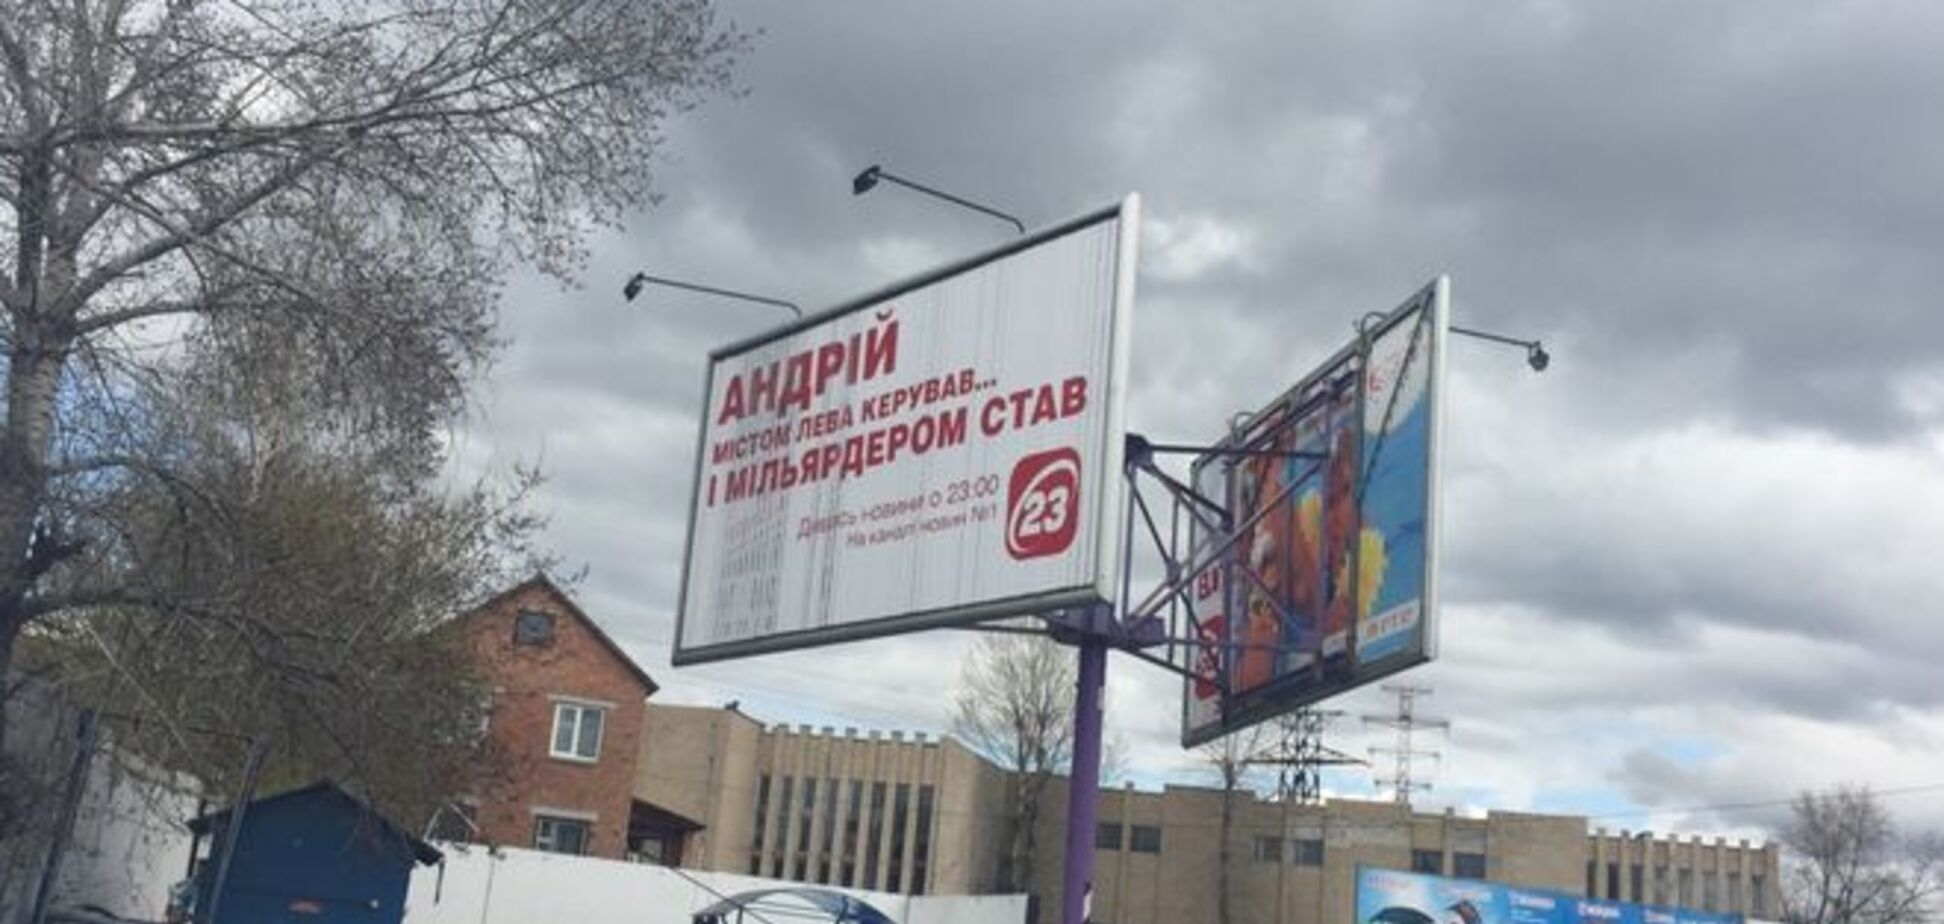 'Андрій містом Лева керував': в Киеве появились билборды против Садового